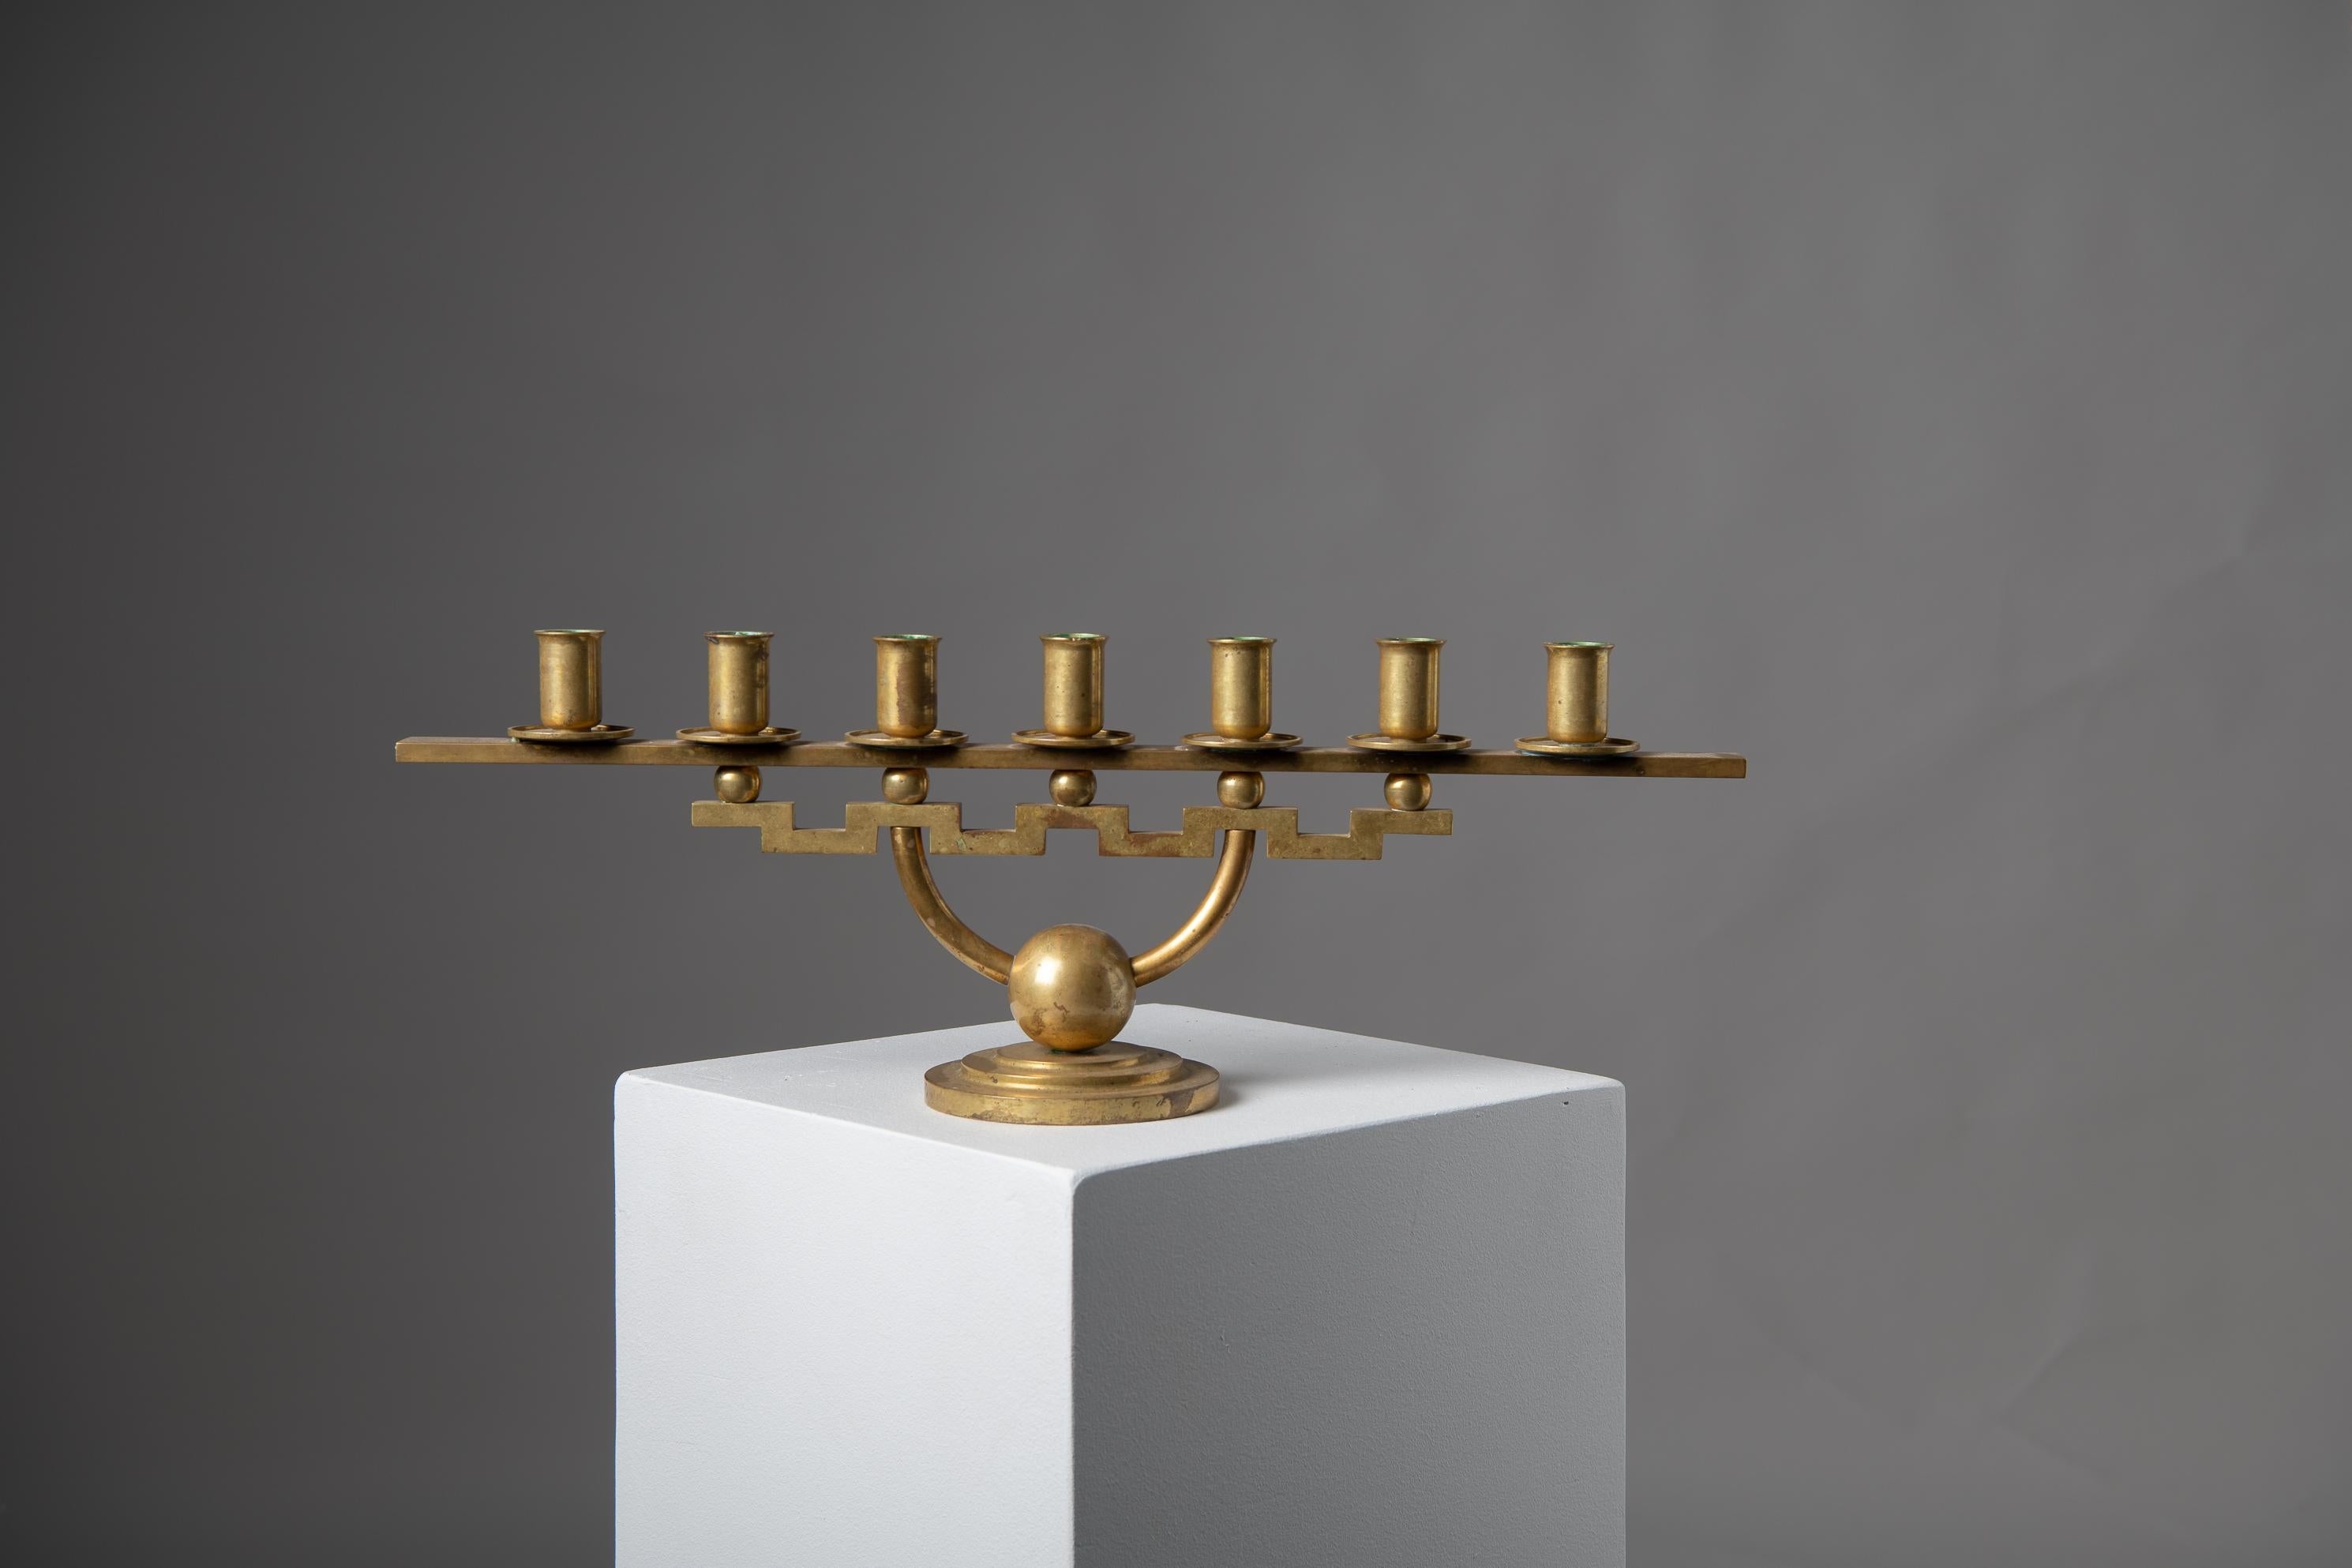 Moderner skandinavischer Kerzenständer von Lars Holmström, Arvika Schweden. Der Kerzenhalter hat sieben Arme und zeichnet sich durch ein geometrisches, aber einfaches Design aus. Sie ist aus Messing gefertigt und hat die authentische Patina der